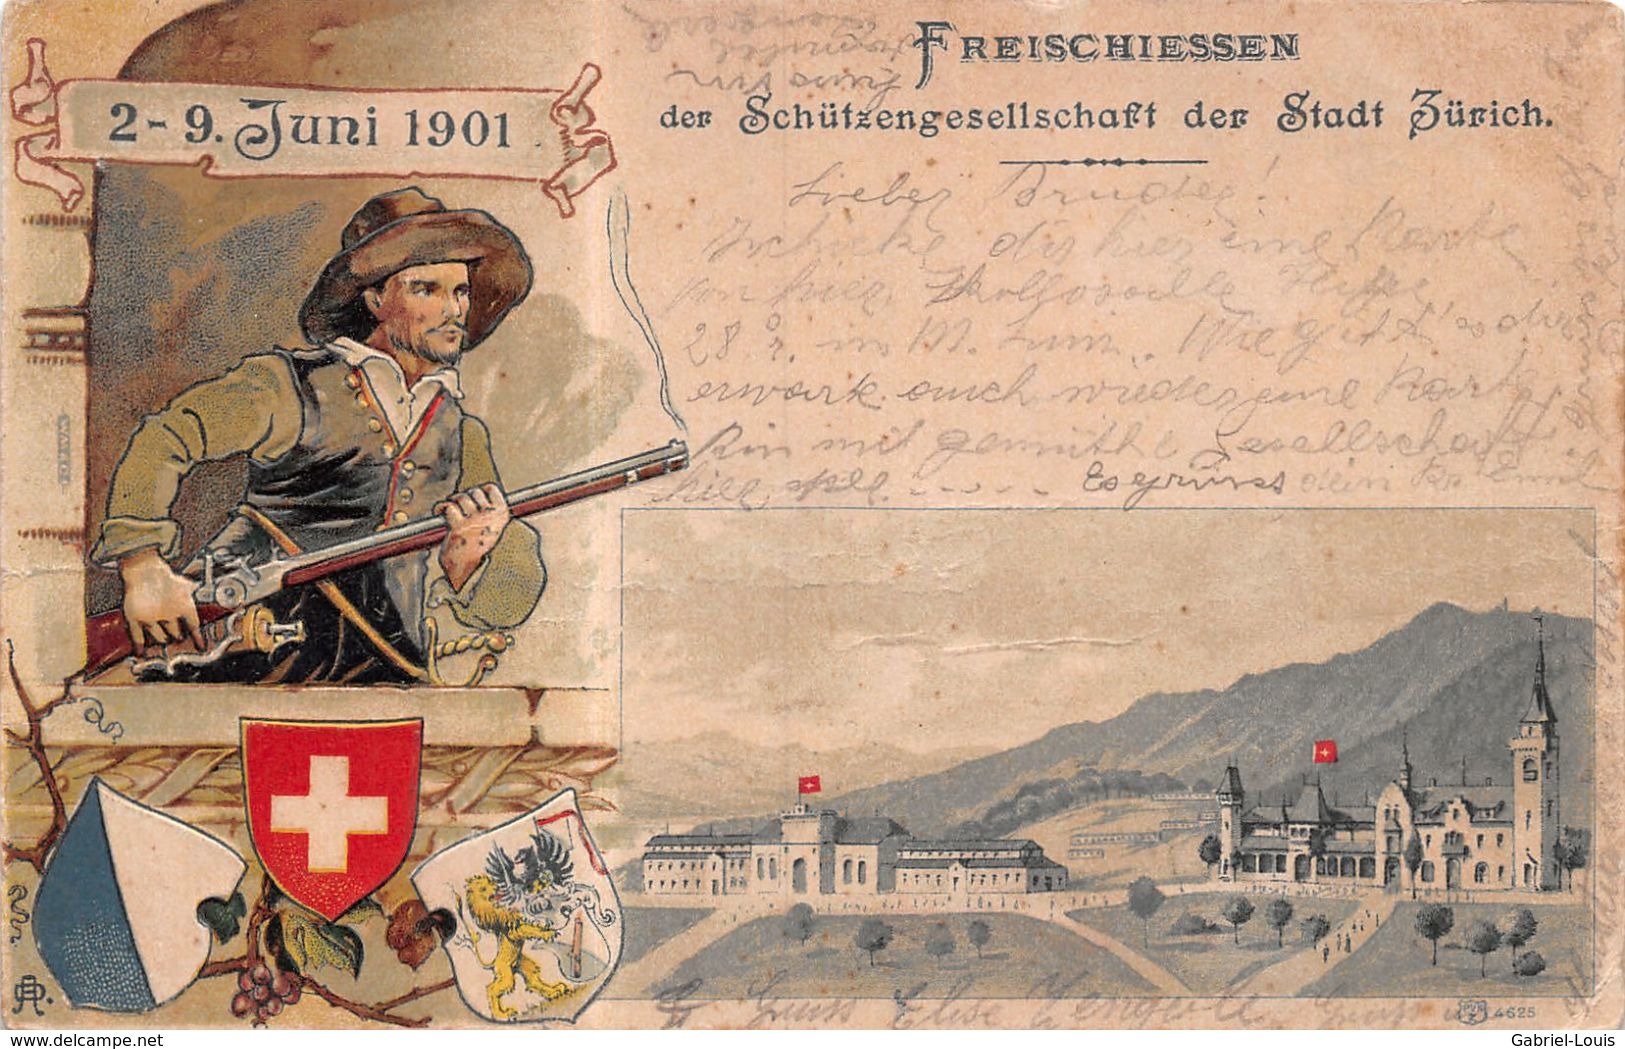 Freischiessen Der Schützengesellchaft  Der Stadt Zürich 2-9 Juni 1901 - Gaufrée - Litho - Zürich